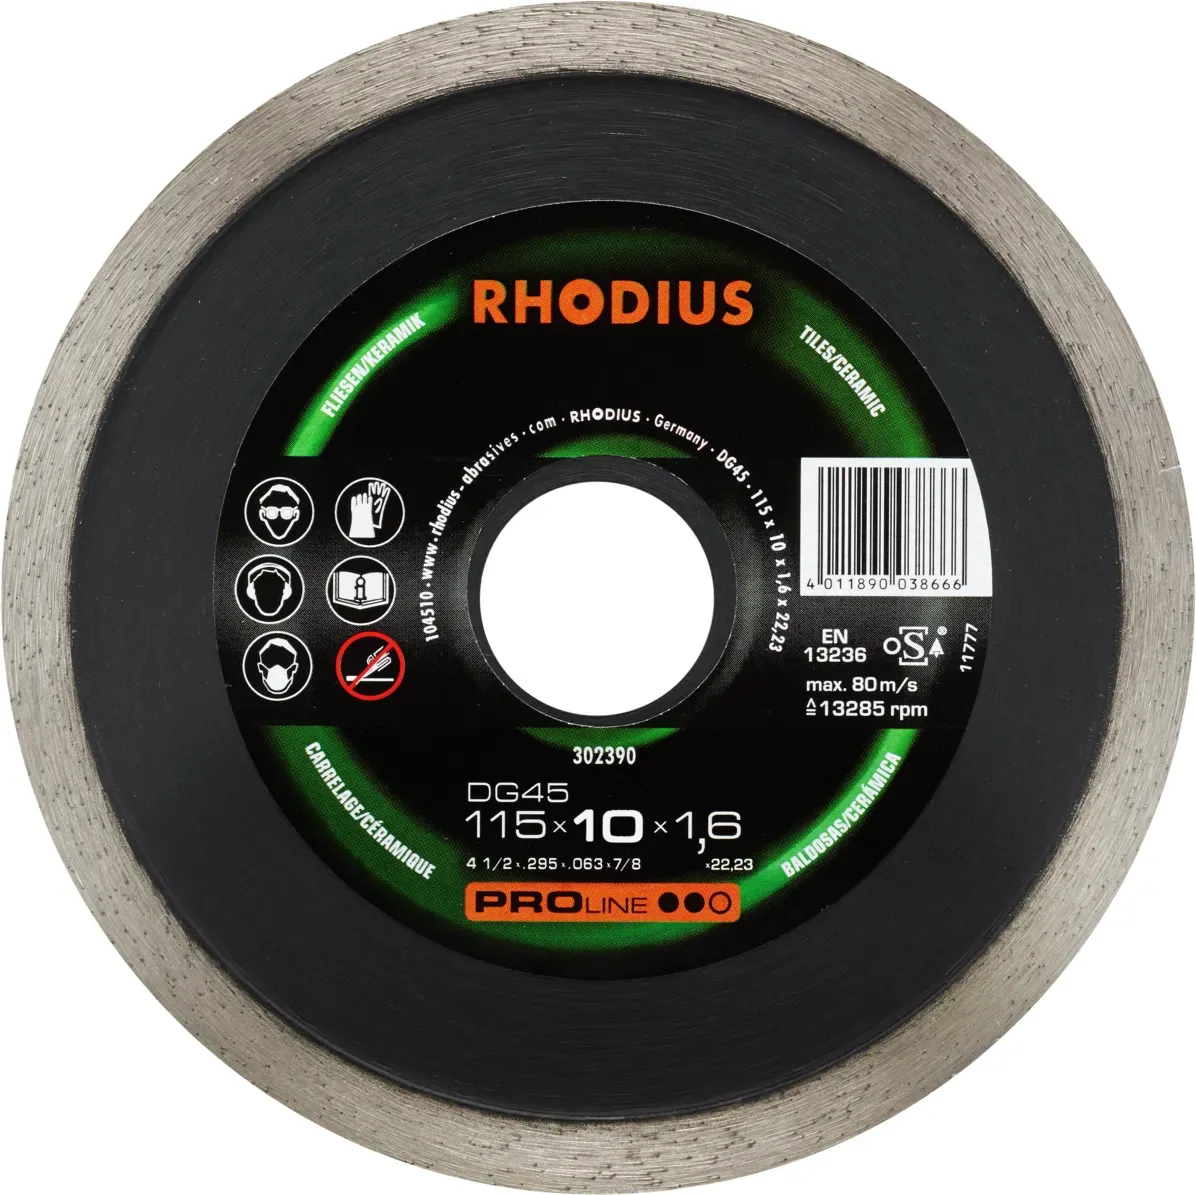 RHODIUS DG45 115mm Diamanttrennscheibe - Präzises & Qualitätsvolles Werkzeug aus dem Hause Rhodius